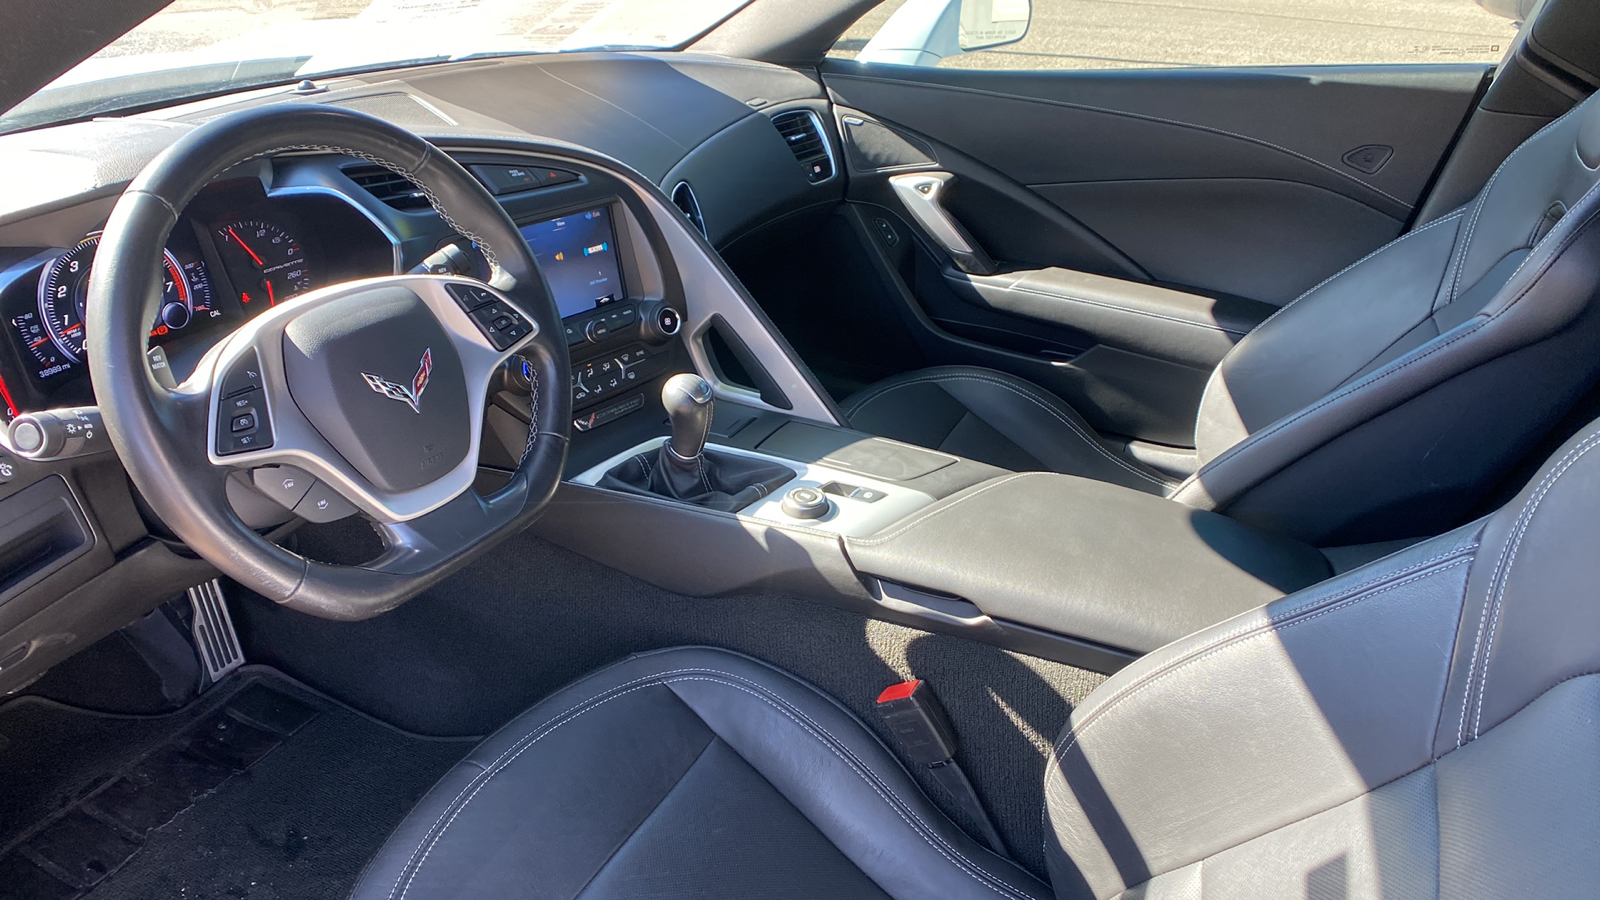 2019 Chevrolet Corvette 2dr Stingray Cpe w/1LT 18